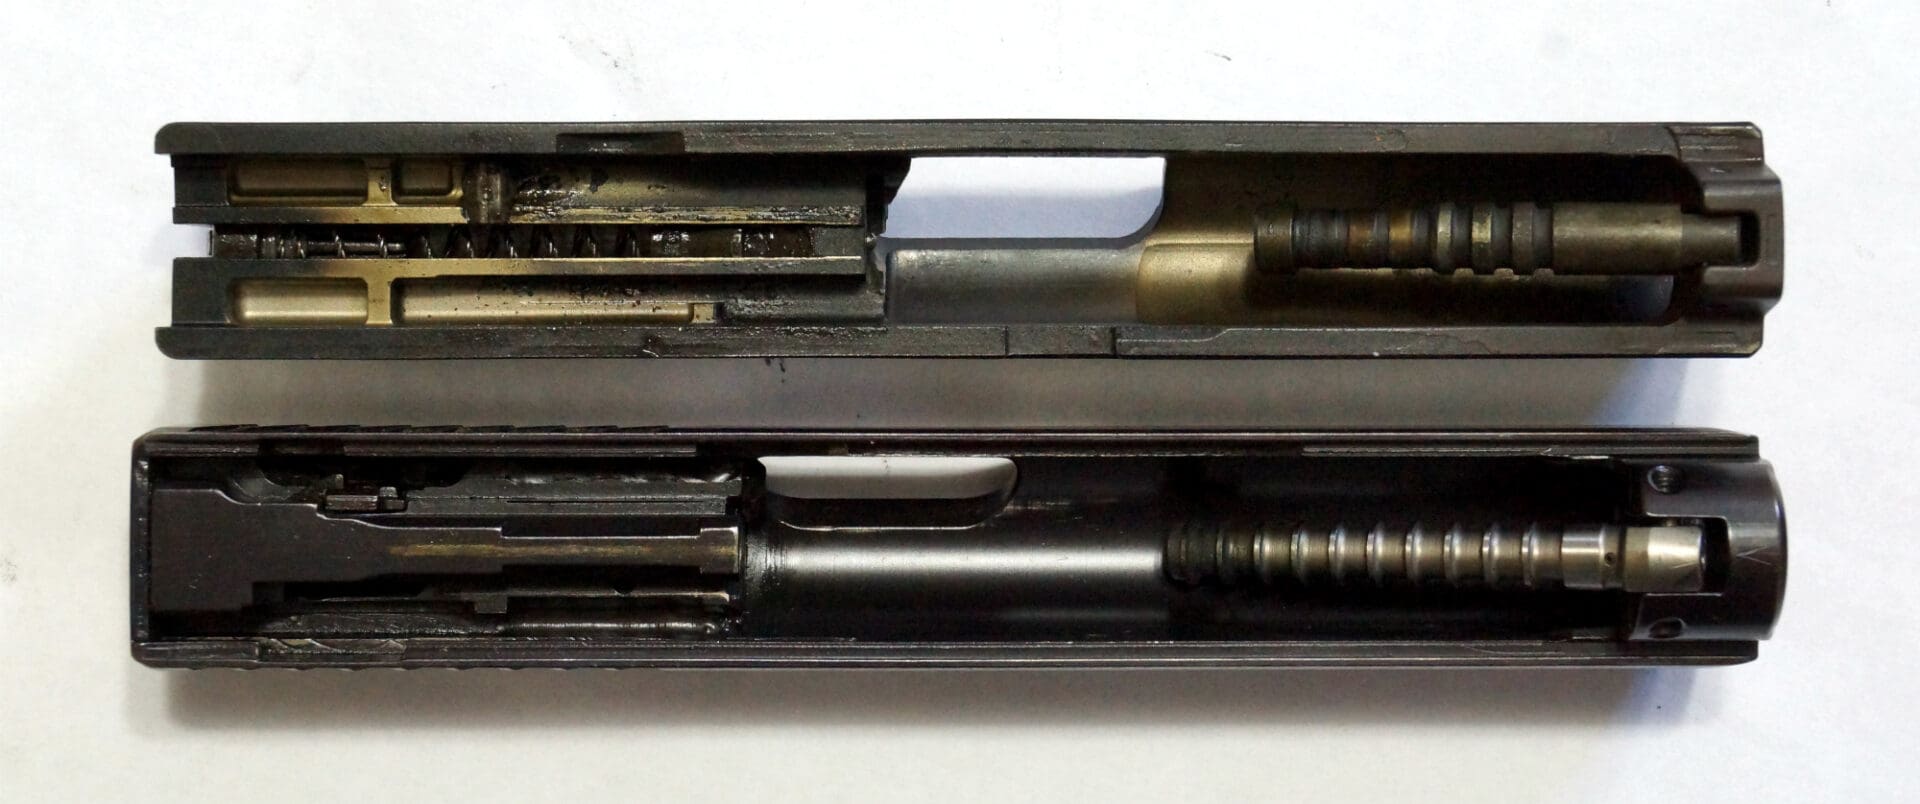 Heckler & Koch HK P7 9mm pistol